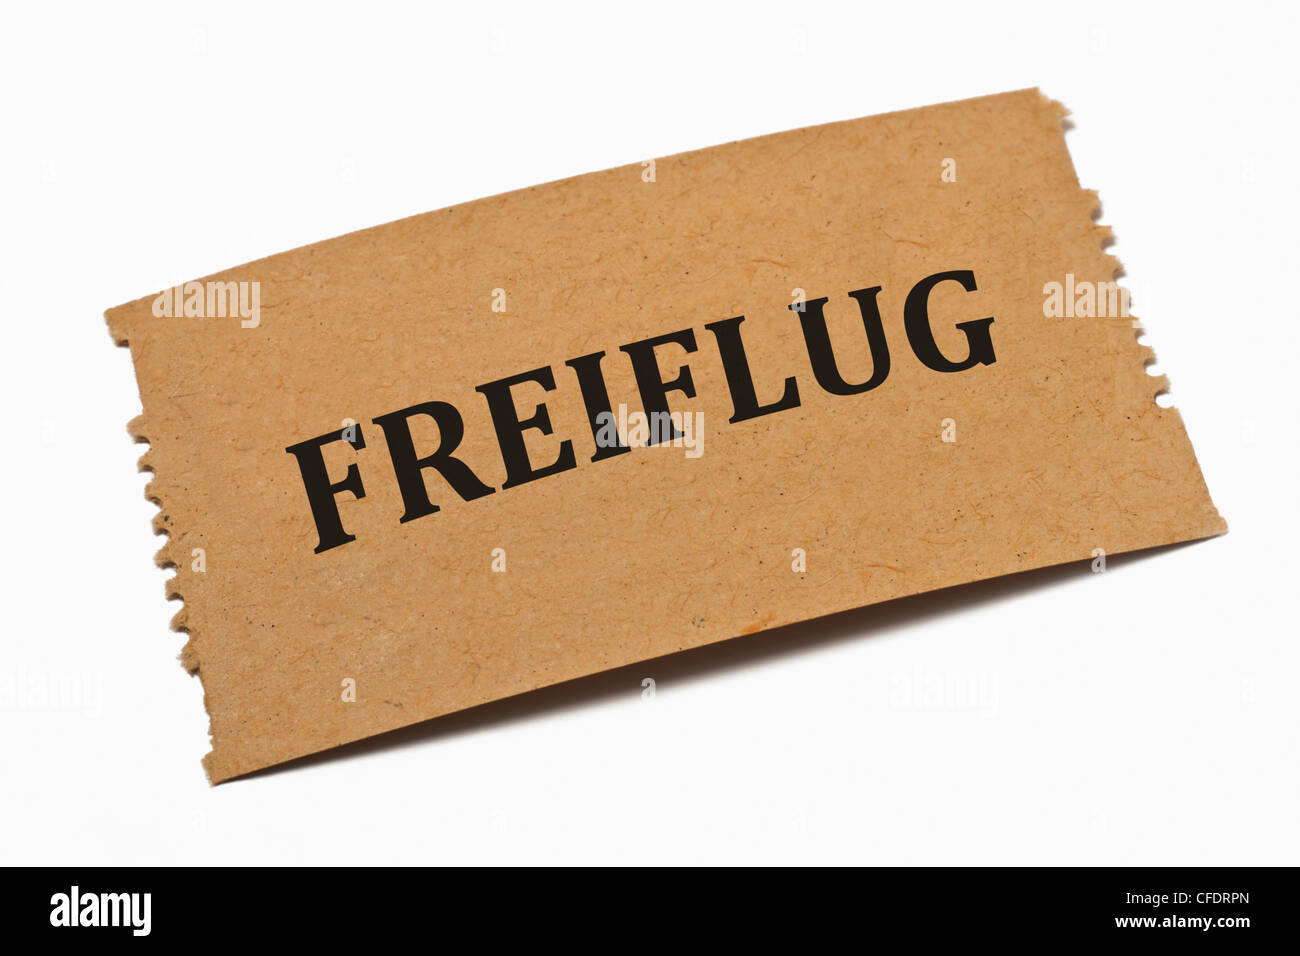 Photo détail d'une carte papier avec l'inscription Freiflug (vol libre) Banque D'Images